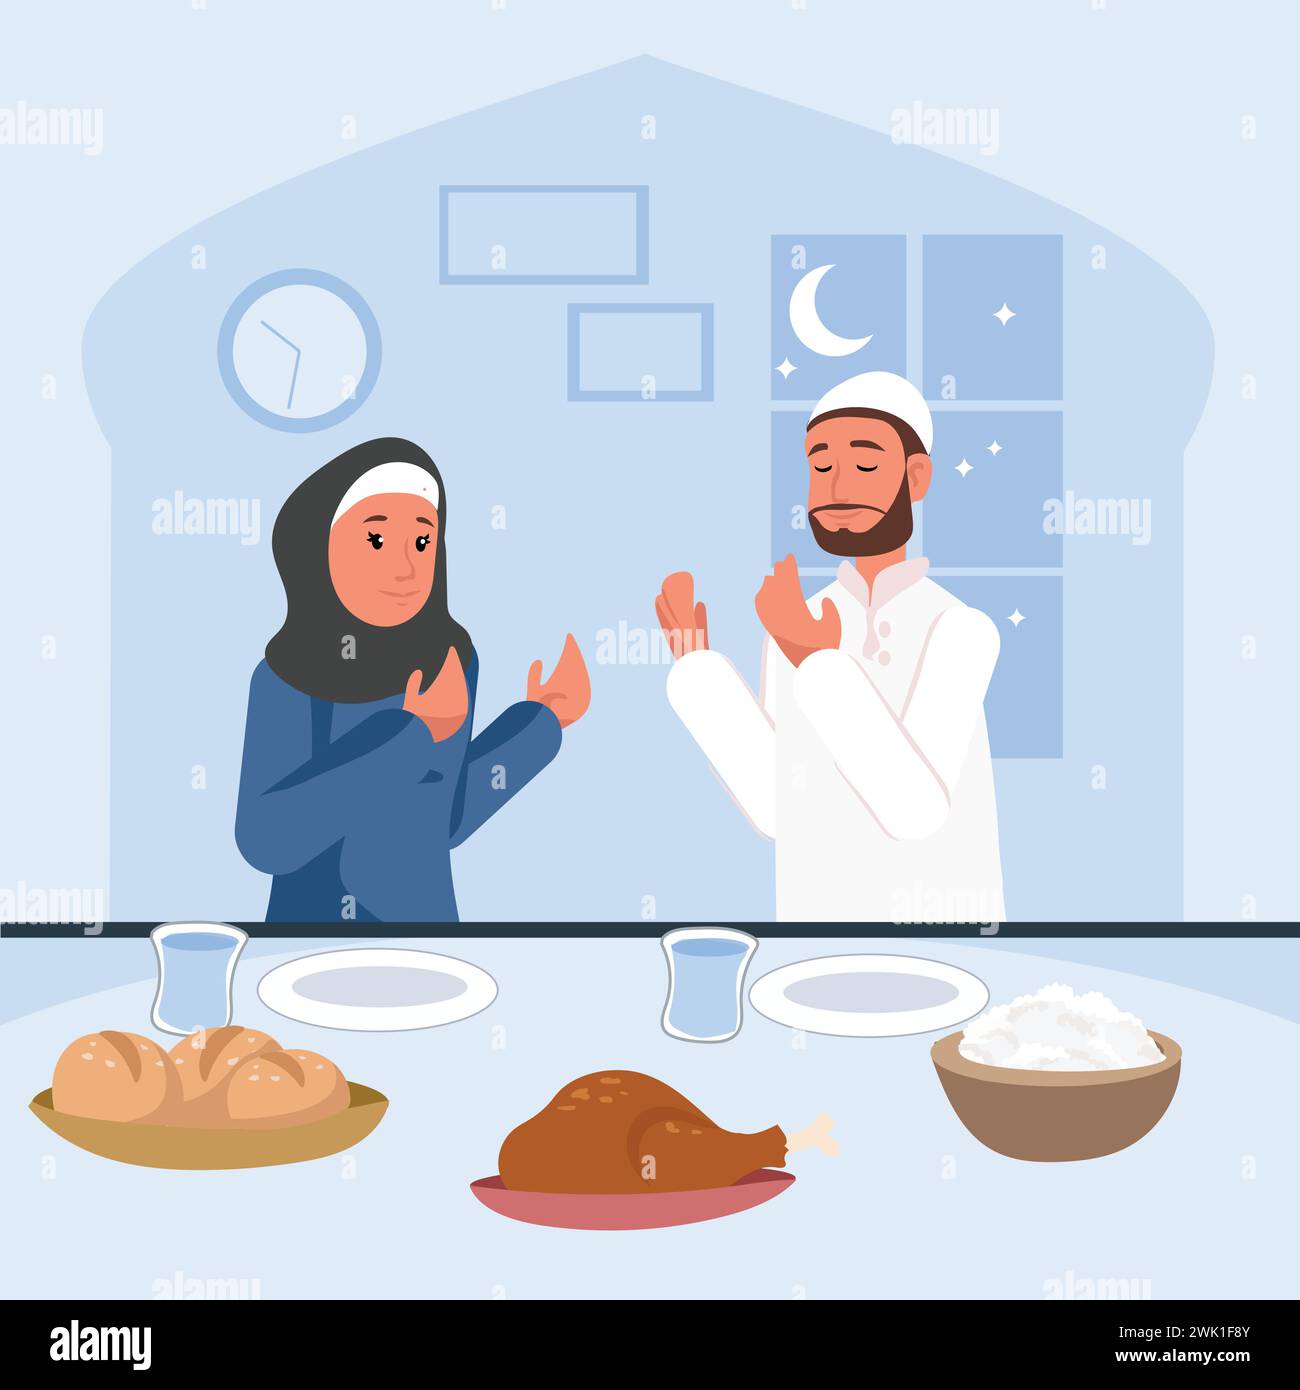 Ramadan-Ritual: Vektor-Illustration einer muslimischen Familie bereitet Iftar-Mahlzeit während des Fastenmonats Ramadan vor und betet über das Abendessen. Islam, ramadan Stock Vektor